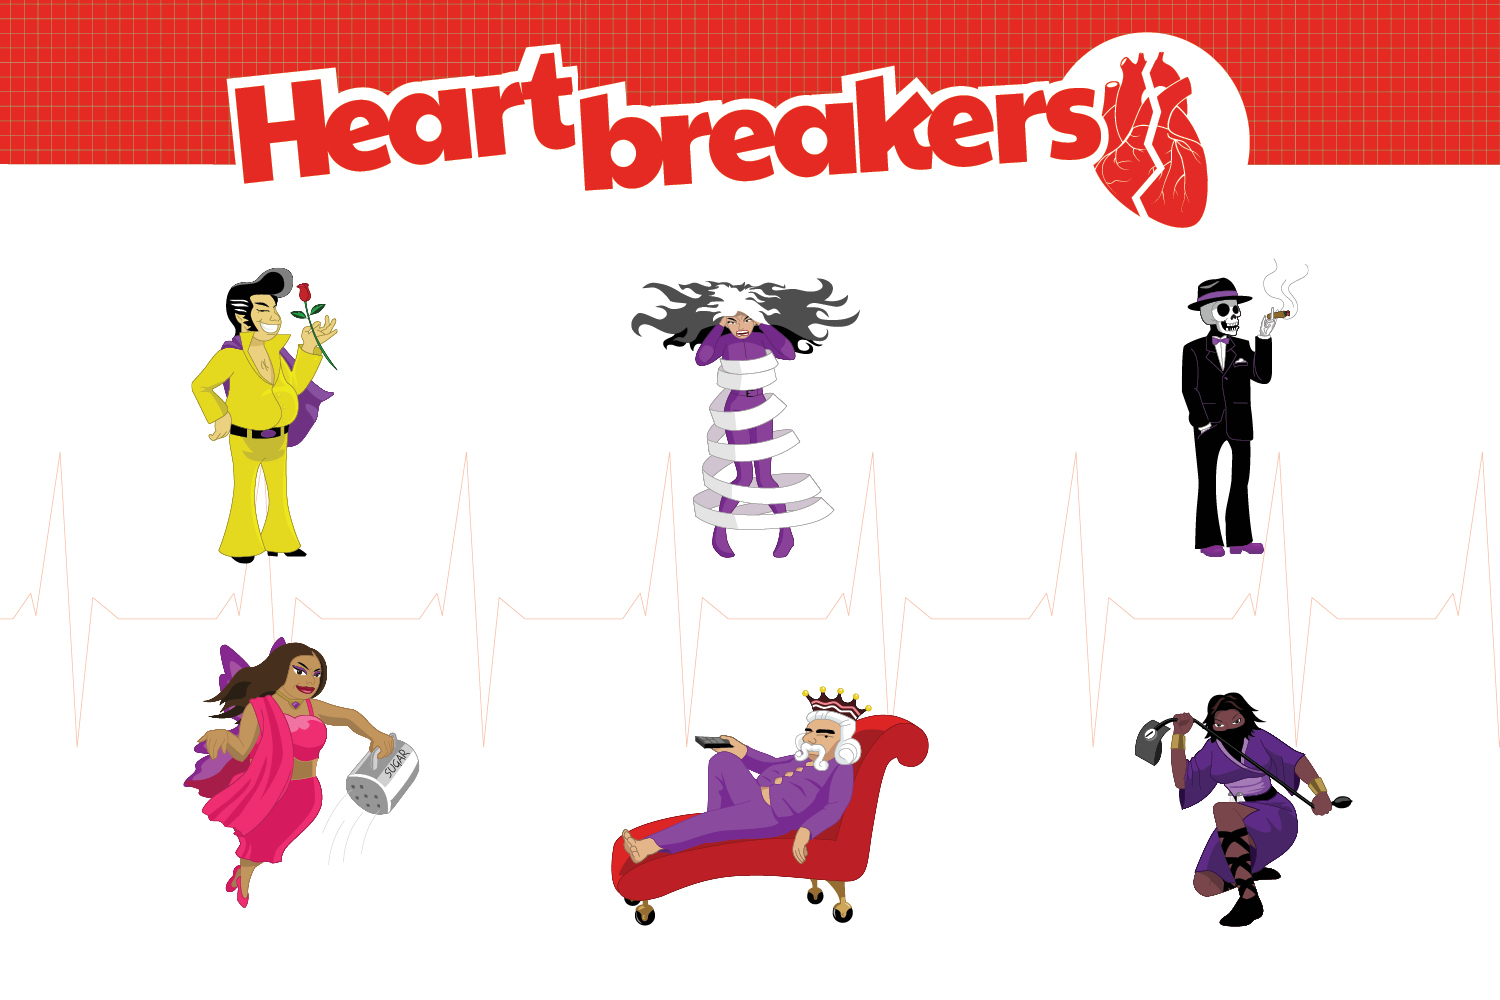 Heart Breakers